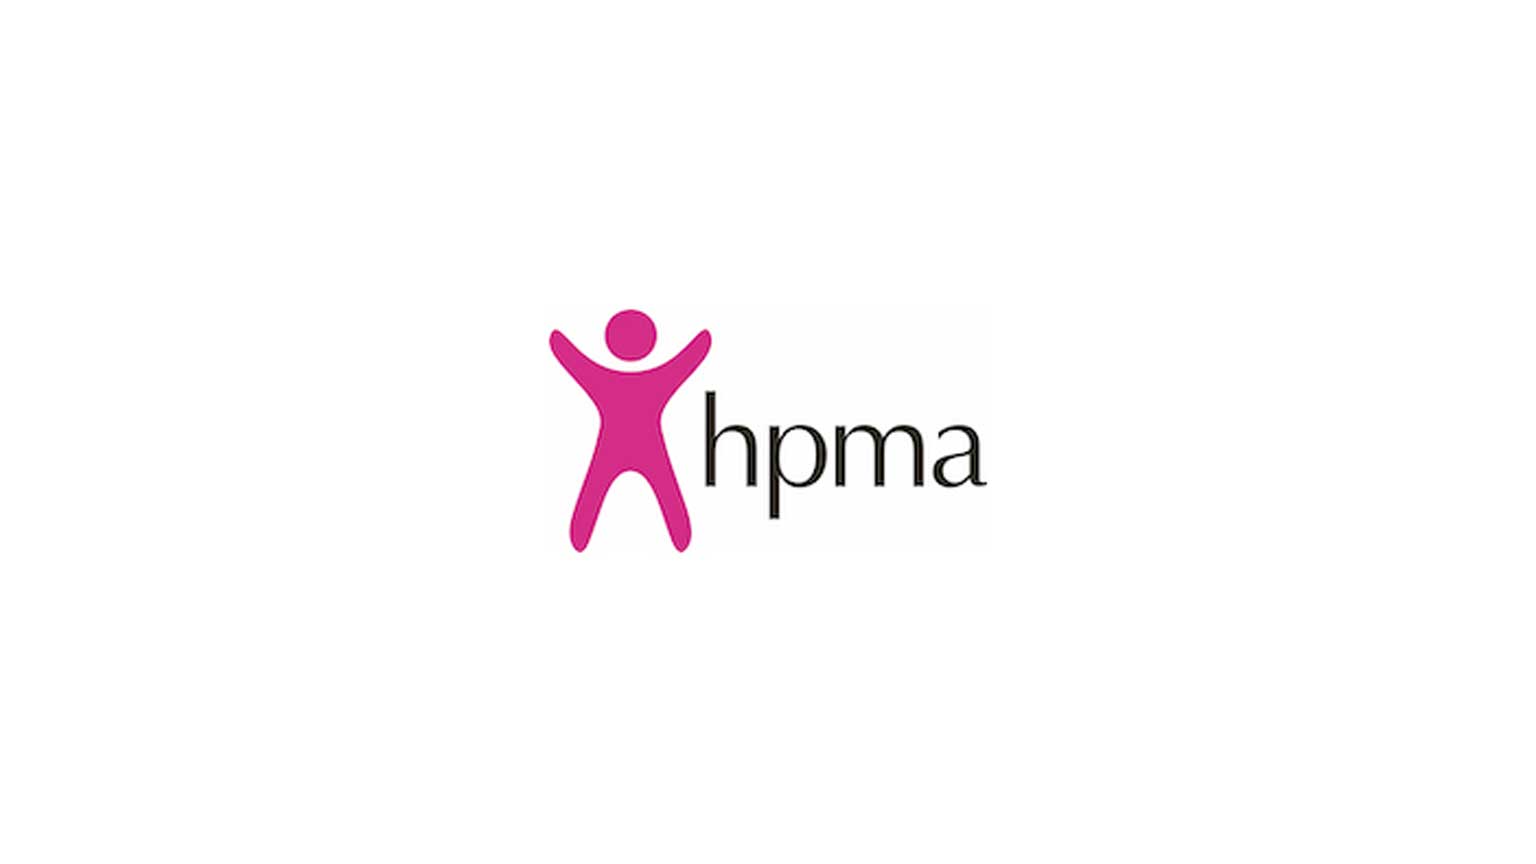 Image: HPMA logo